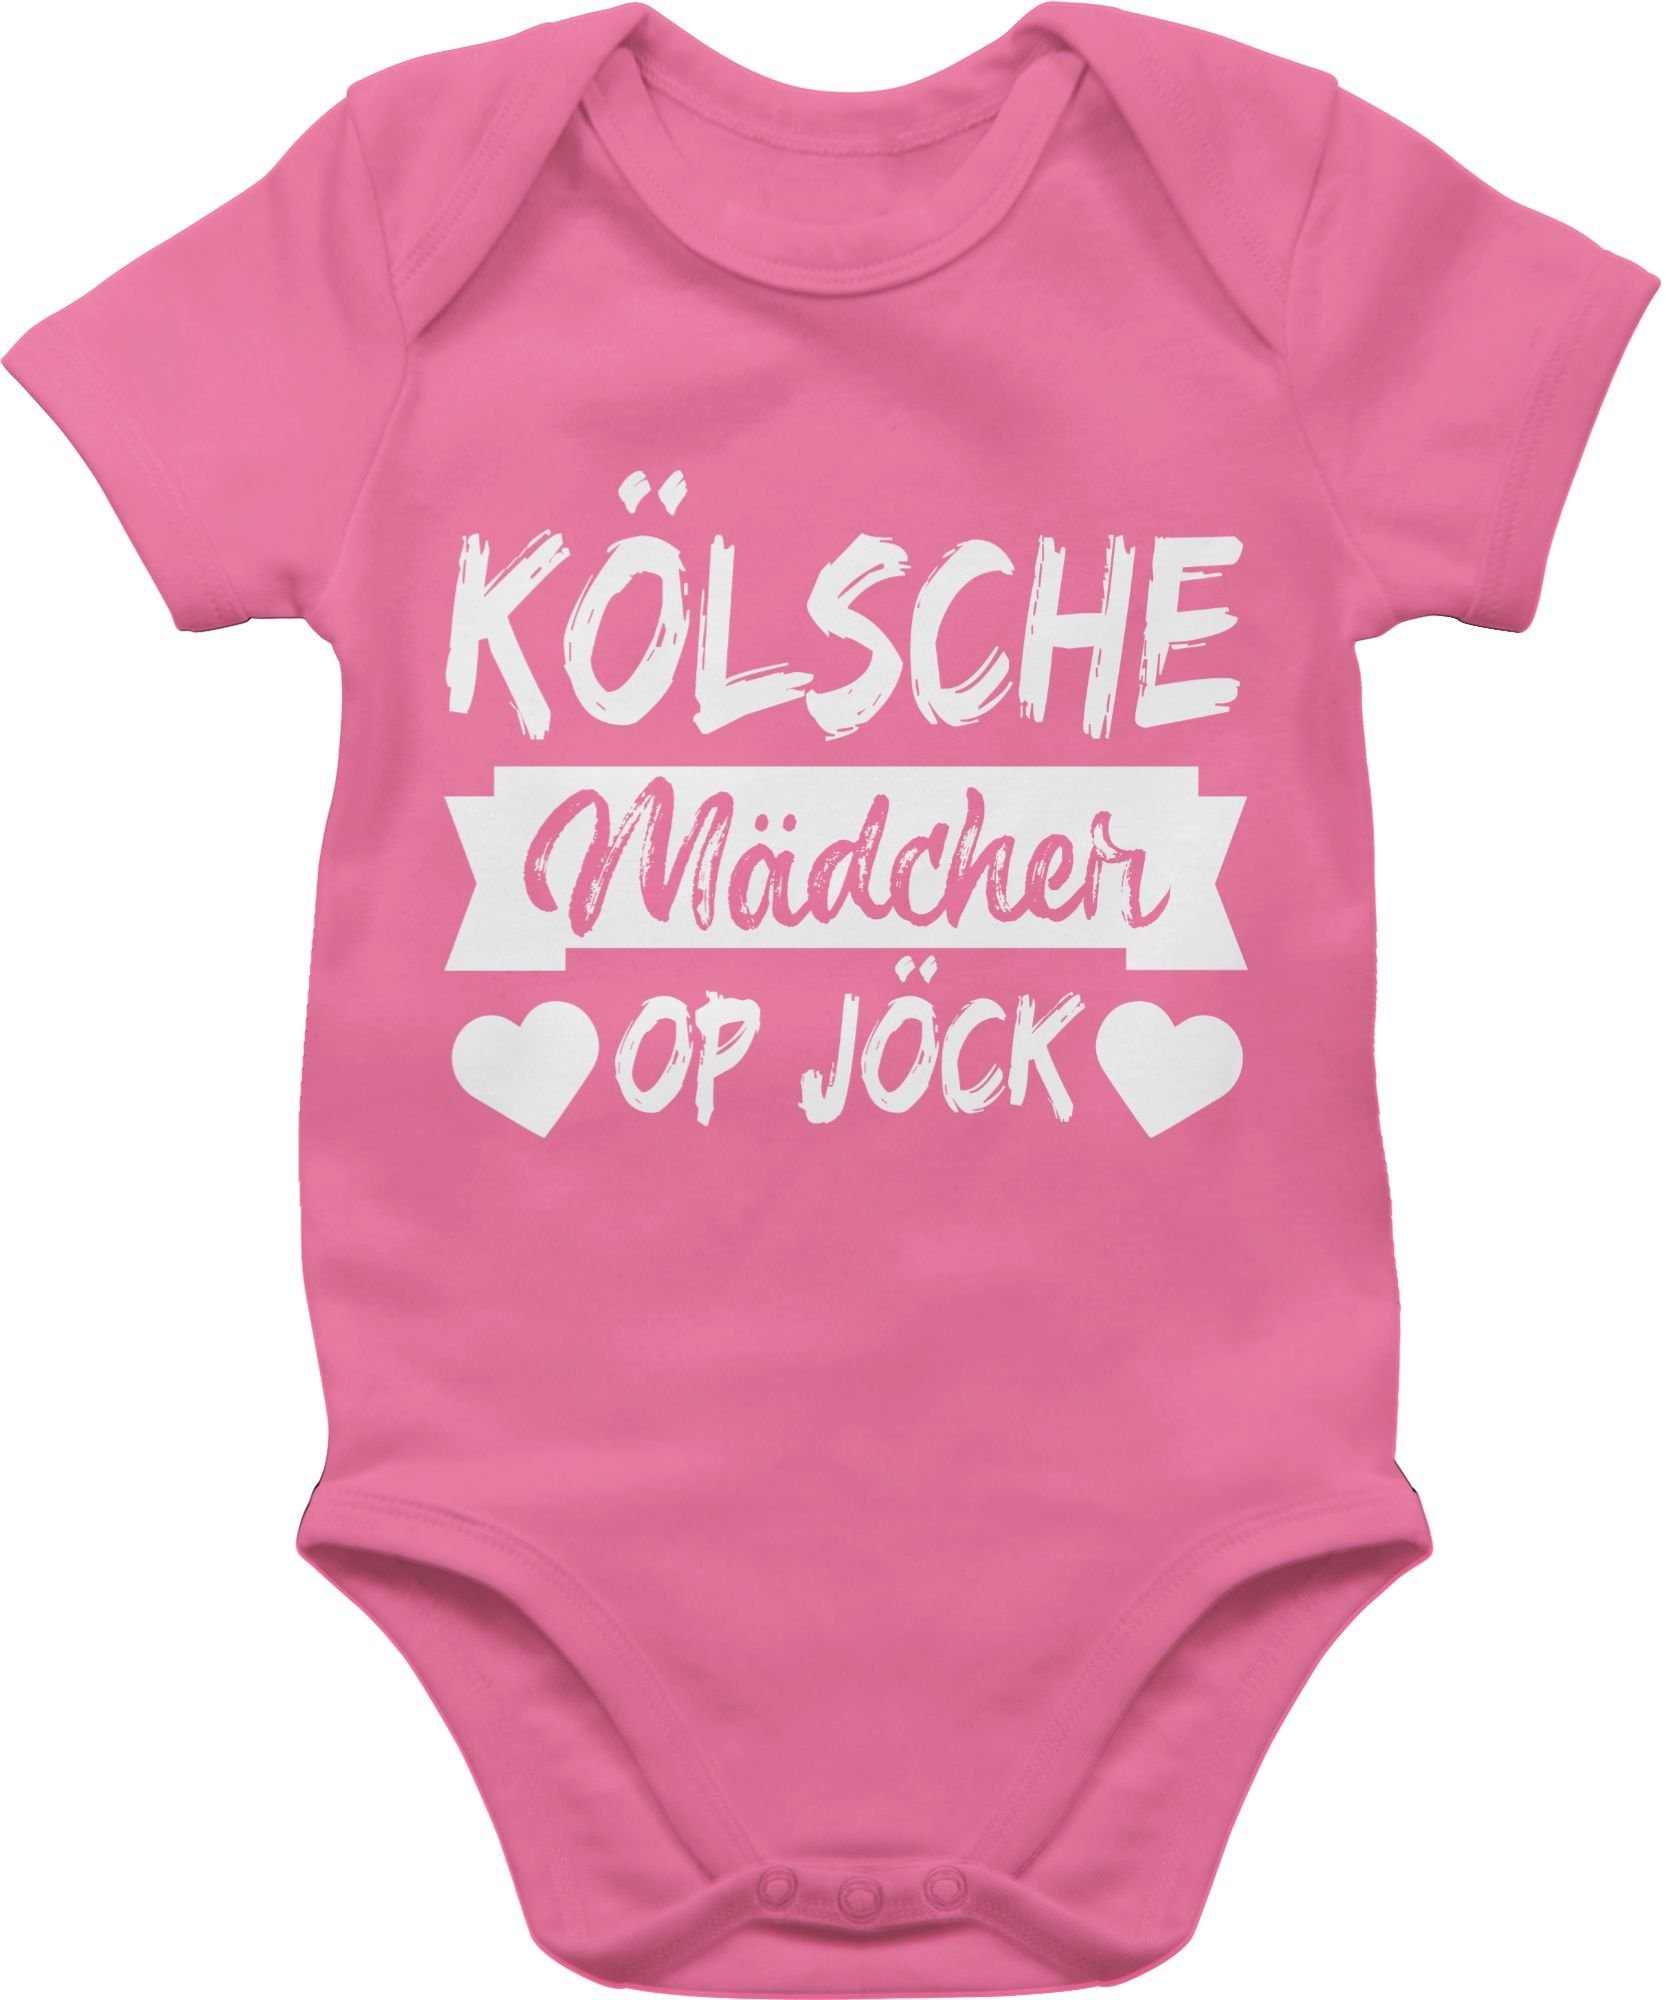 Shirtracer Kölner Pink - op Karneval Jöck 1 & Shirtbody Sprichwort Kölsche - Mädcher weiß Fasching